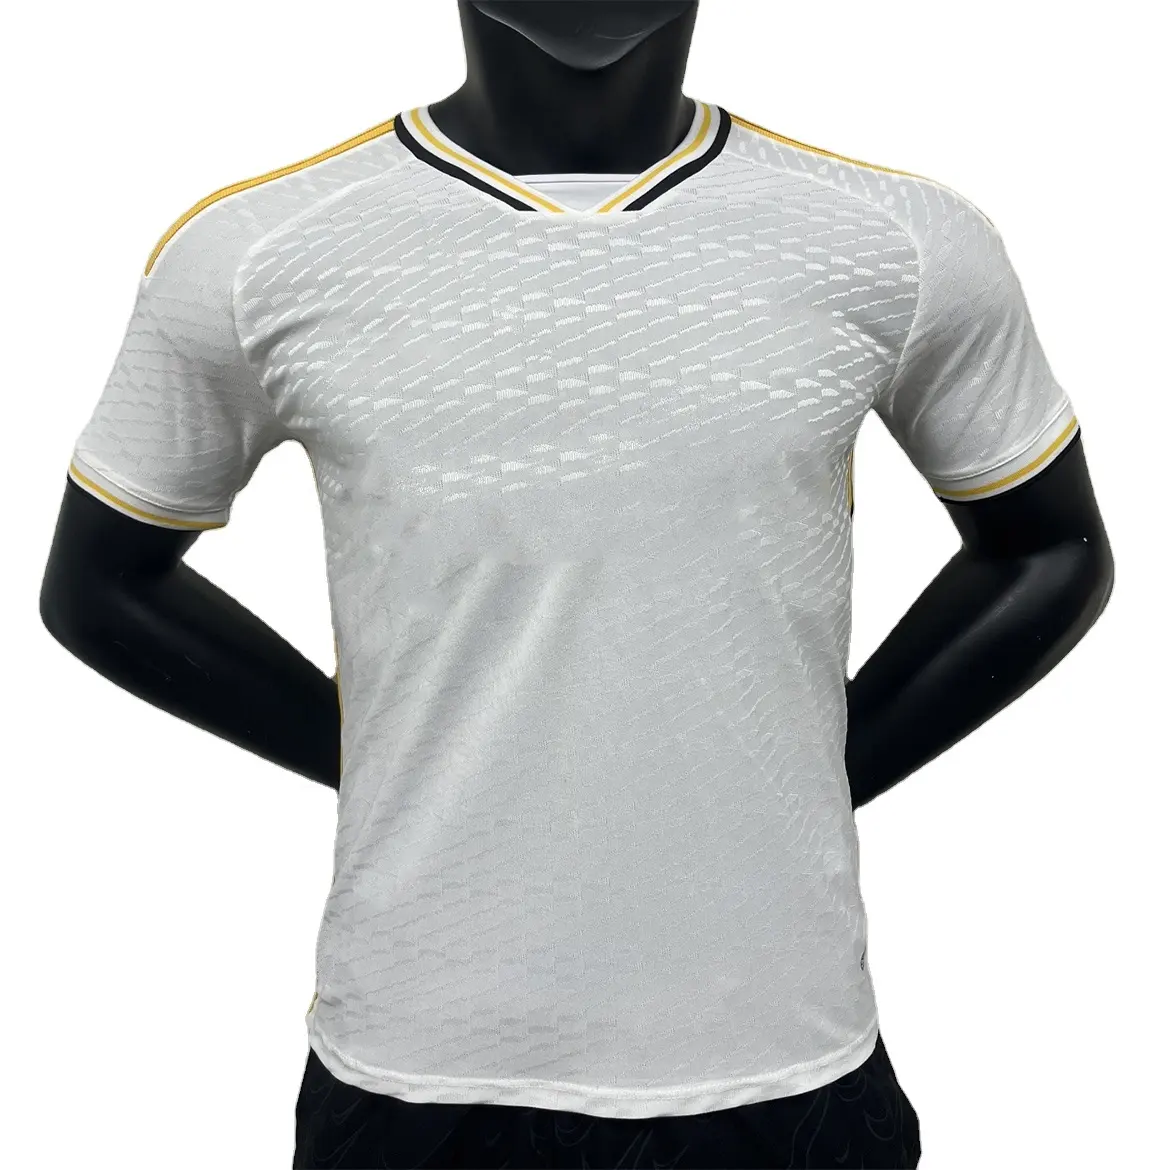 Venta al por mayor de camisetas de fútbol de alta calidad Camisetas de fútbol versión corta de la última camiseta de fútbol de los hombres logotipo personalizado que desee